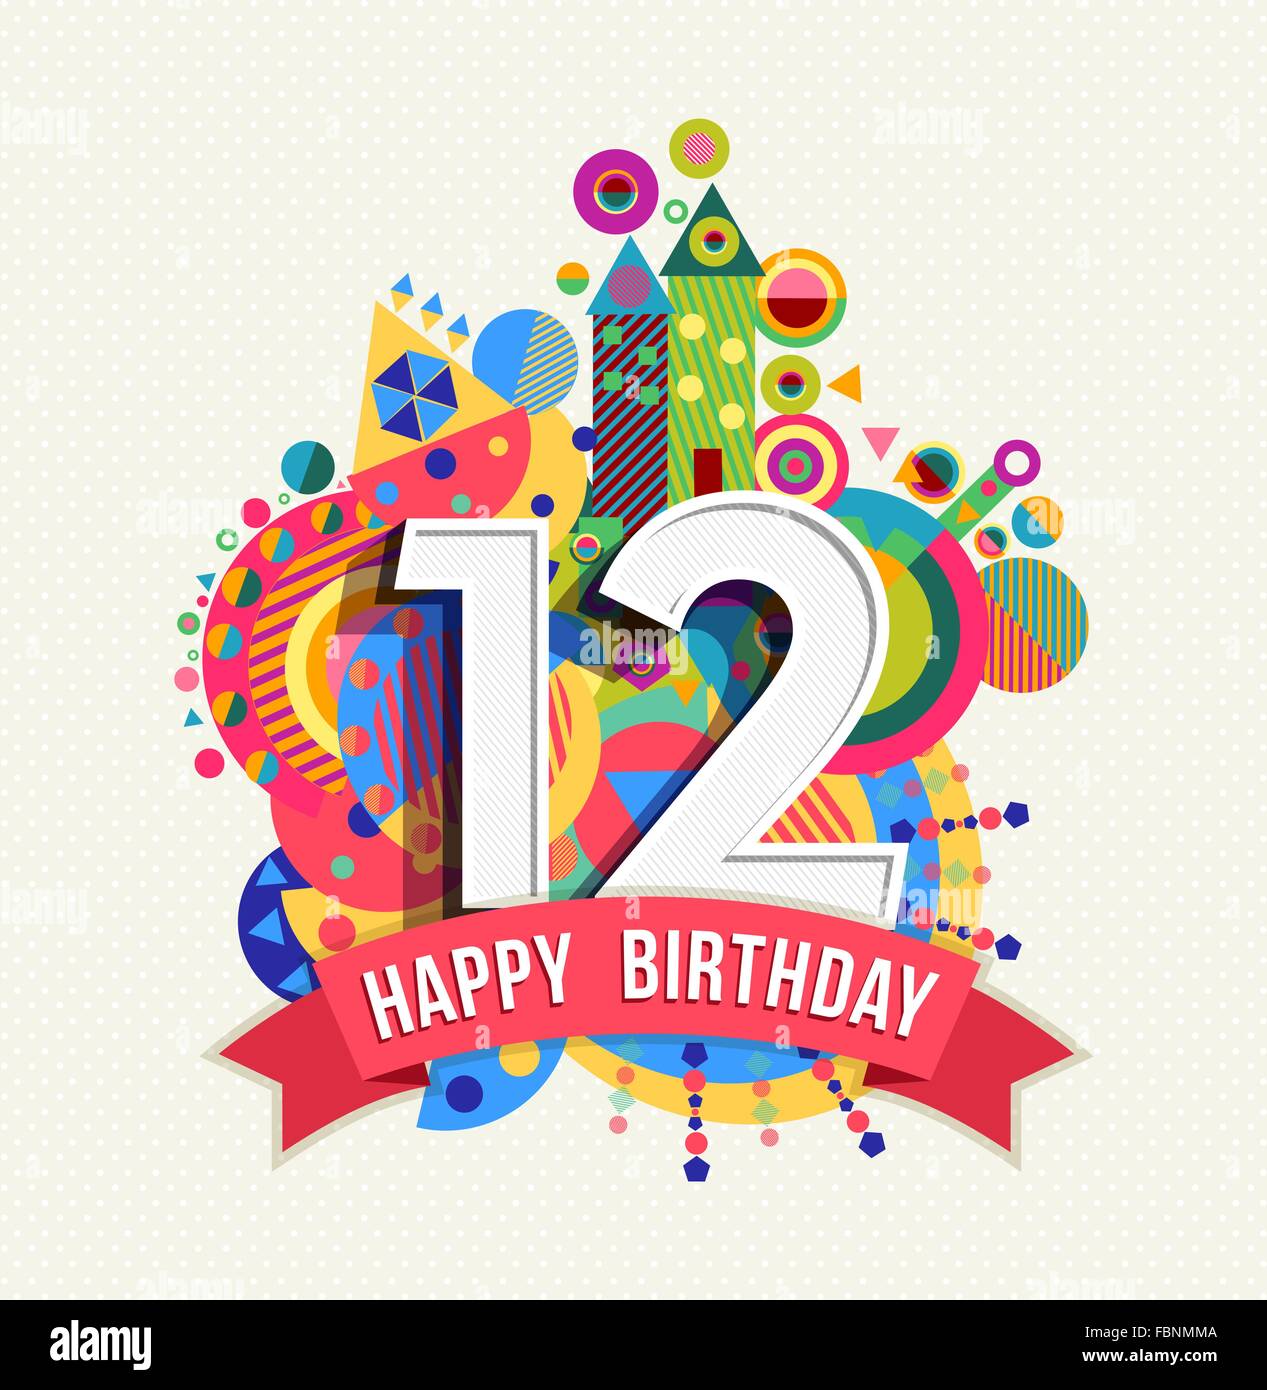 Happy Birthday zwölf 12 Jahr Feier Grußkarte mit Nummer, Beschriftung und bunten Geometriekonstruktion Spaß. EPS10 Vektor. Stock Vektor